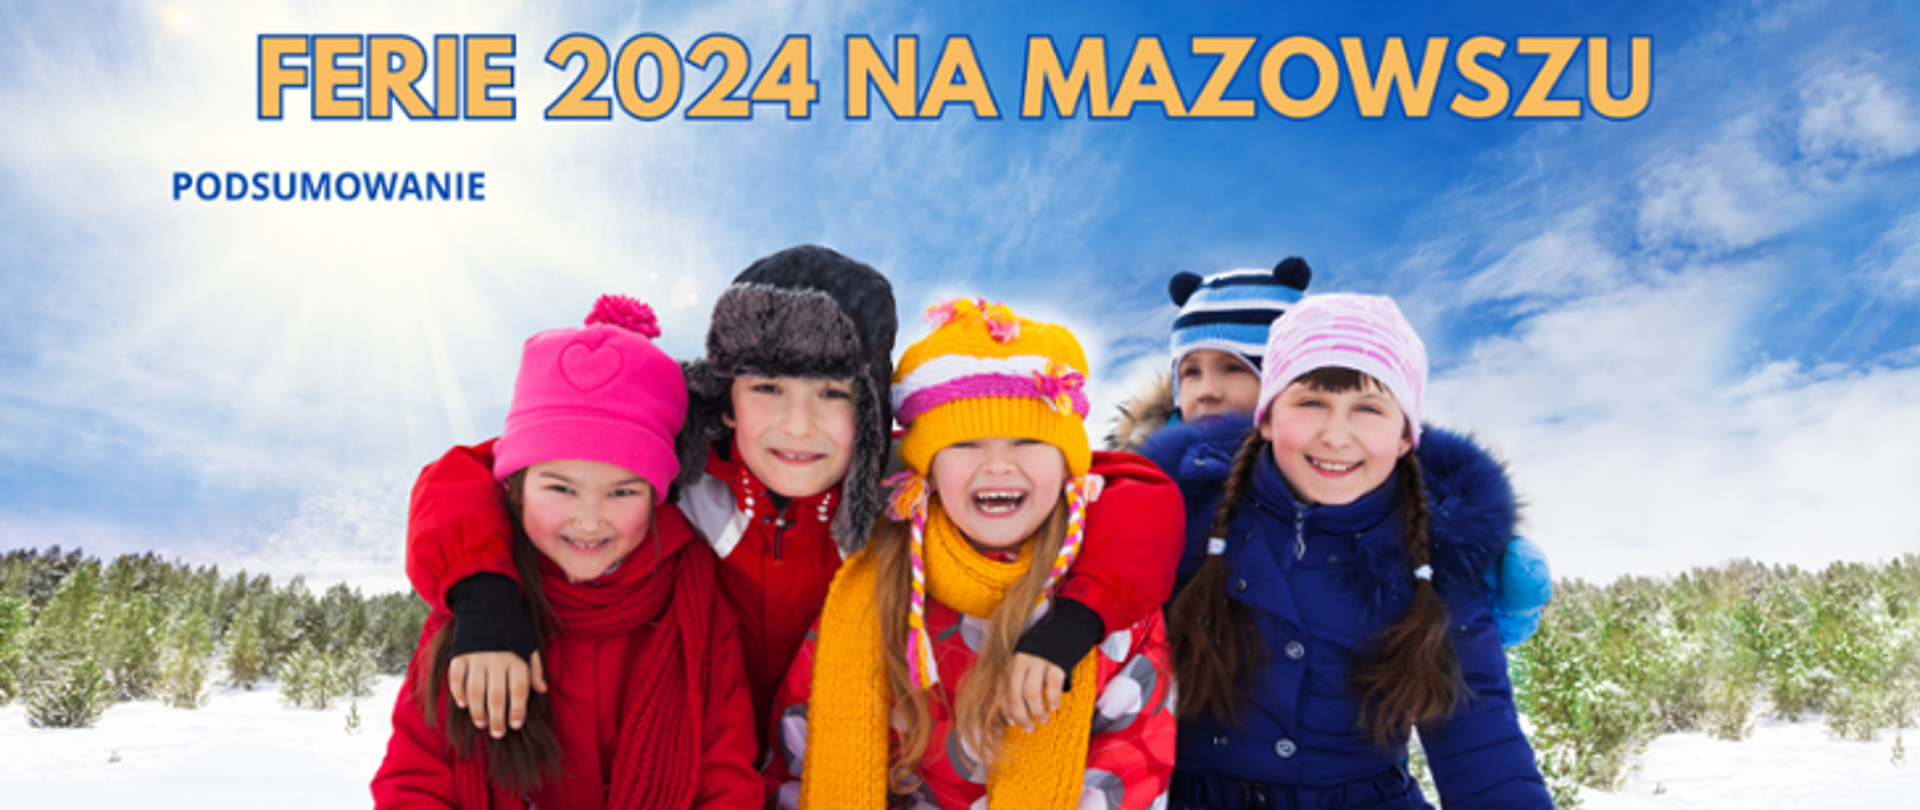 Grupa dzieci na tle zimowego krajobrazu, nad ich głowami napis: Ferie 2024 na Mazowszu podsumowanie.